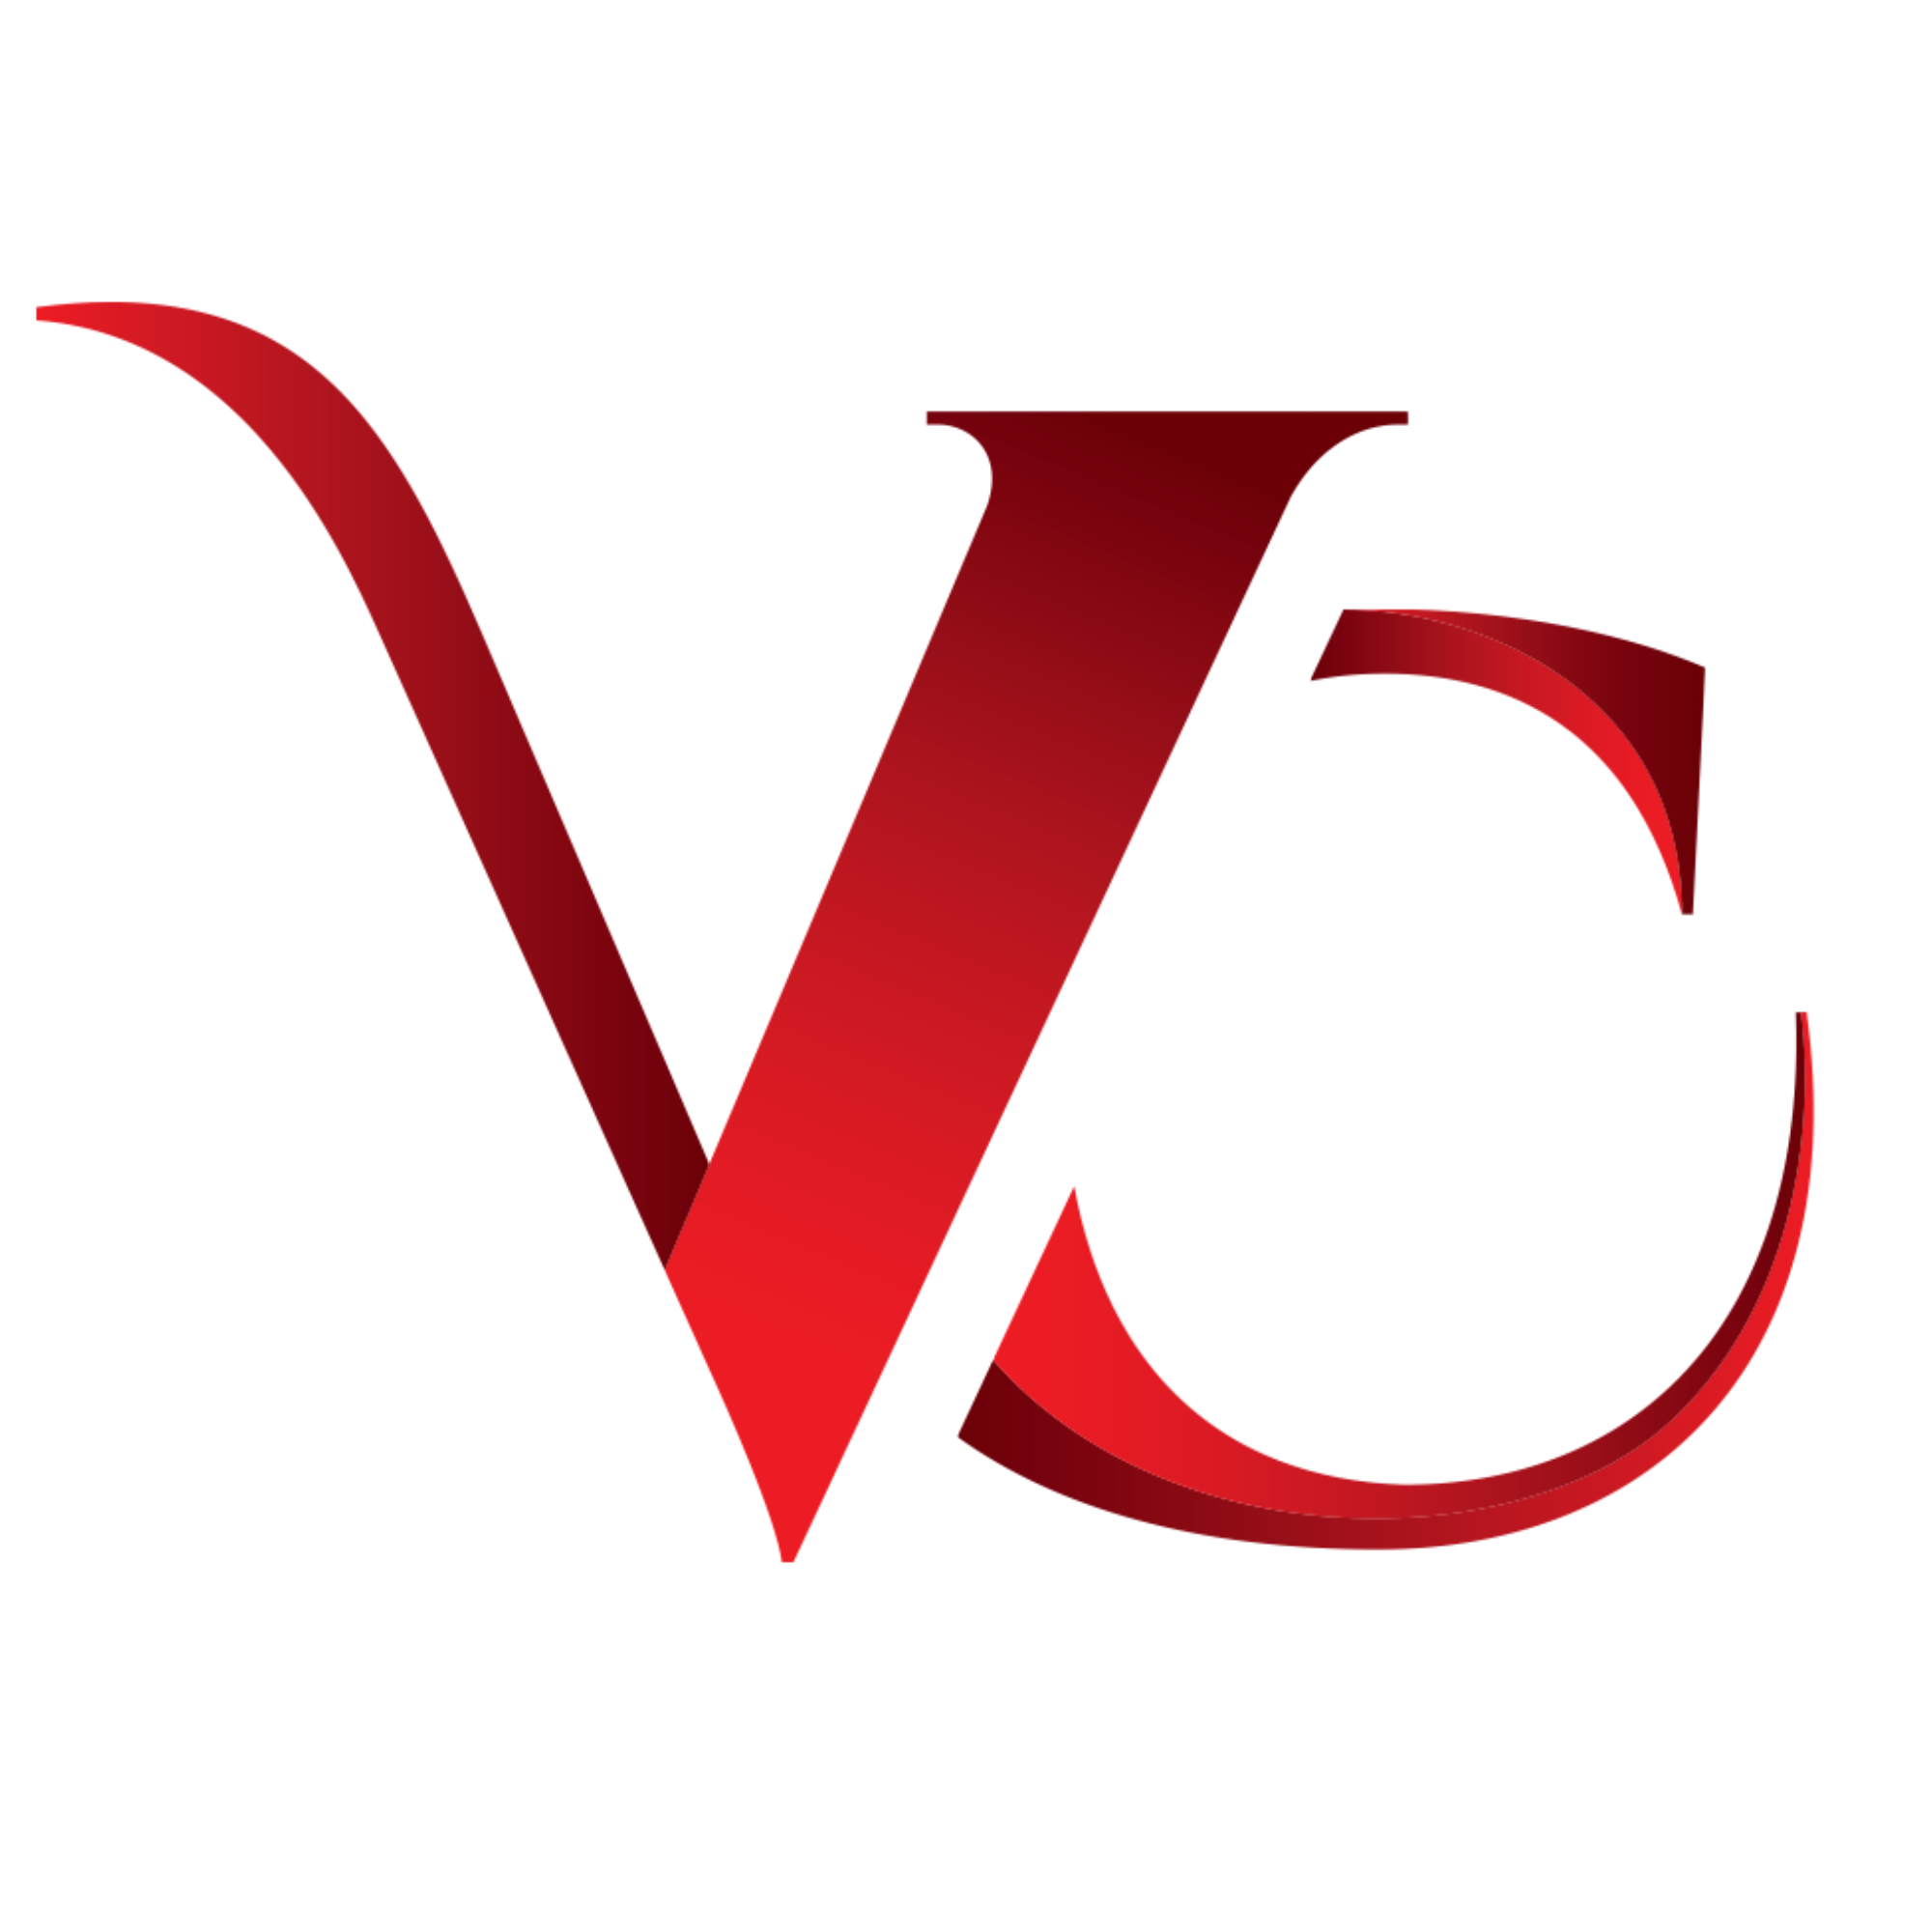 Логотип v. ВЦ логотип. VC буквы. Значок VC.